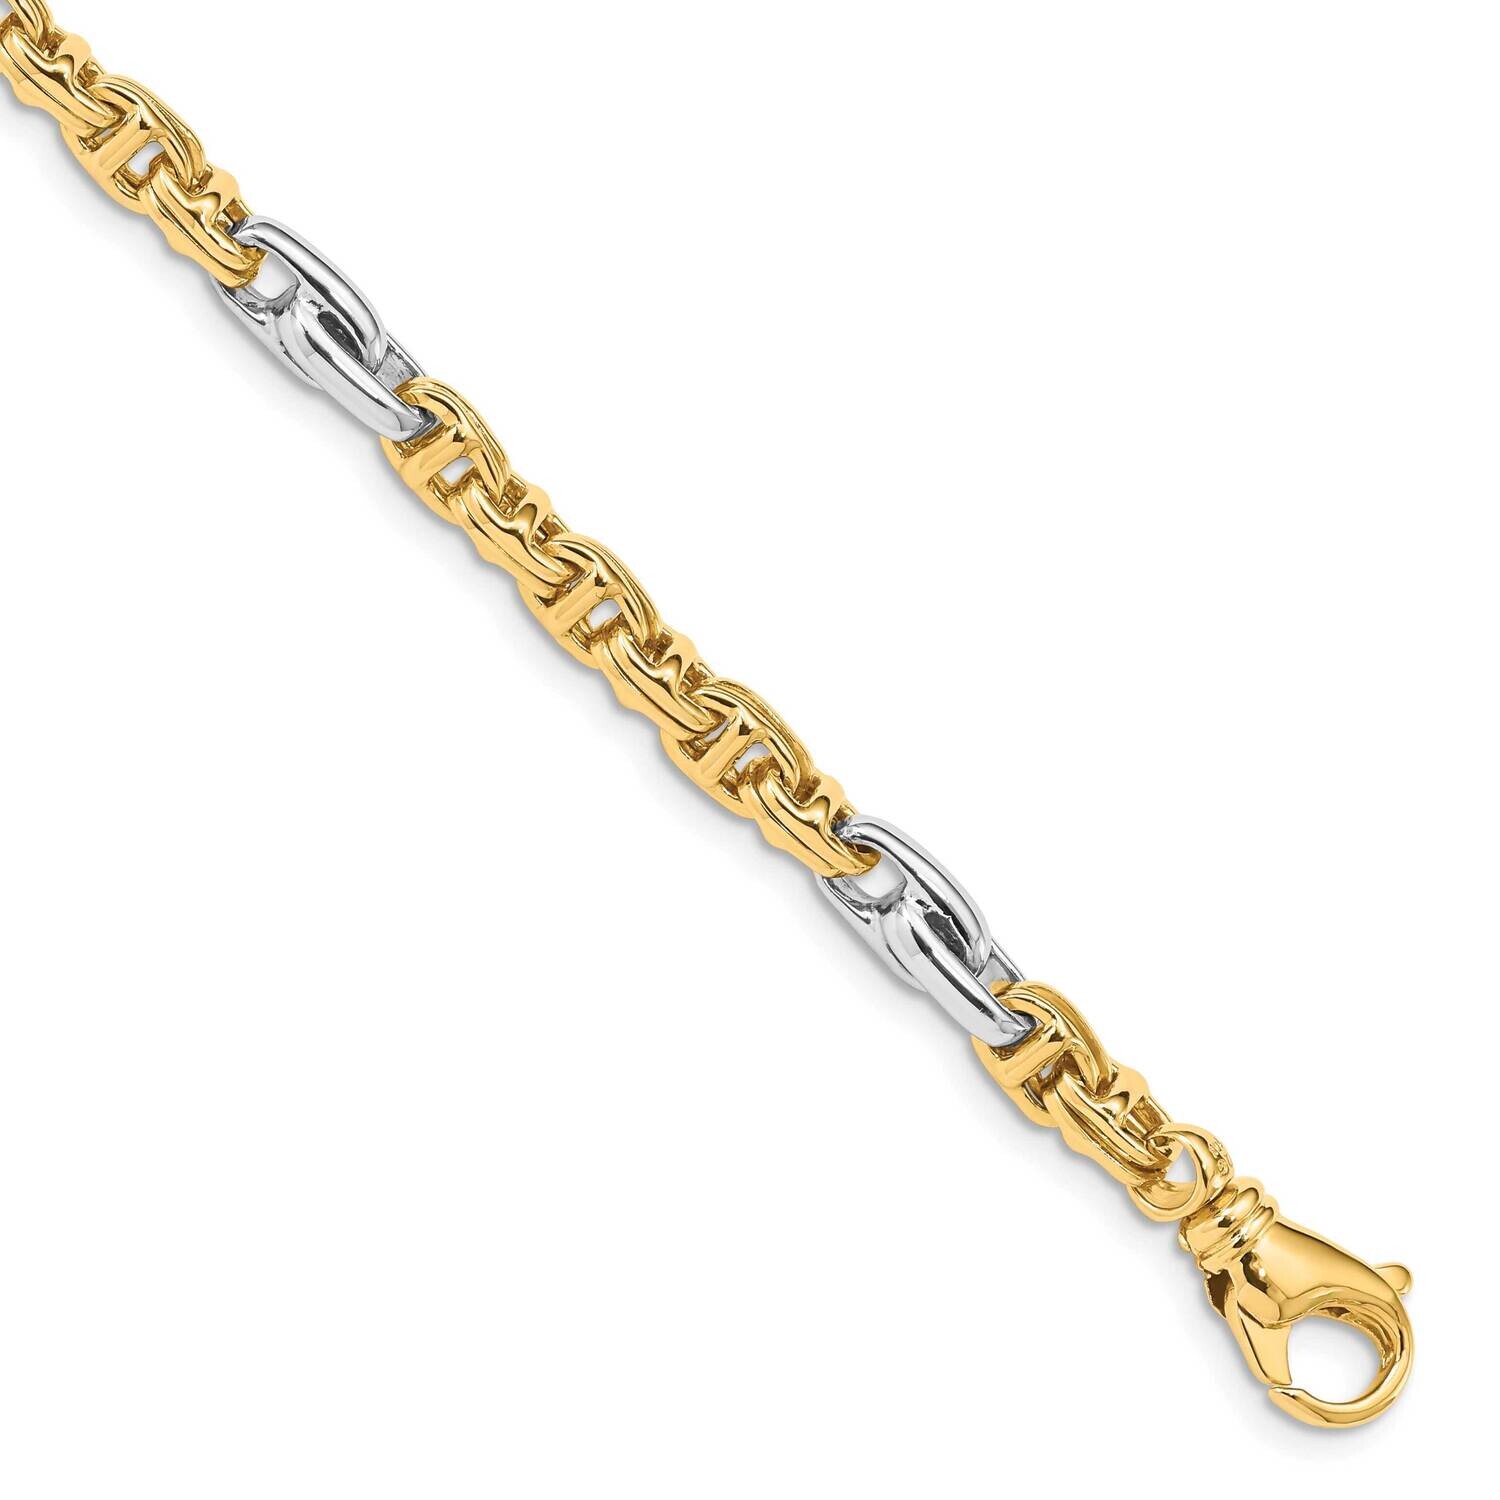 5.38mm Hand-Polished Fancy Link Bracelet 9 Inch 10k Two-Tone Gold 10LK697-9